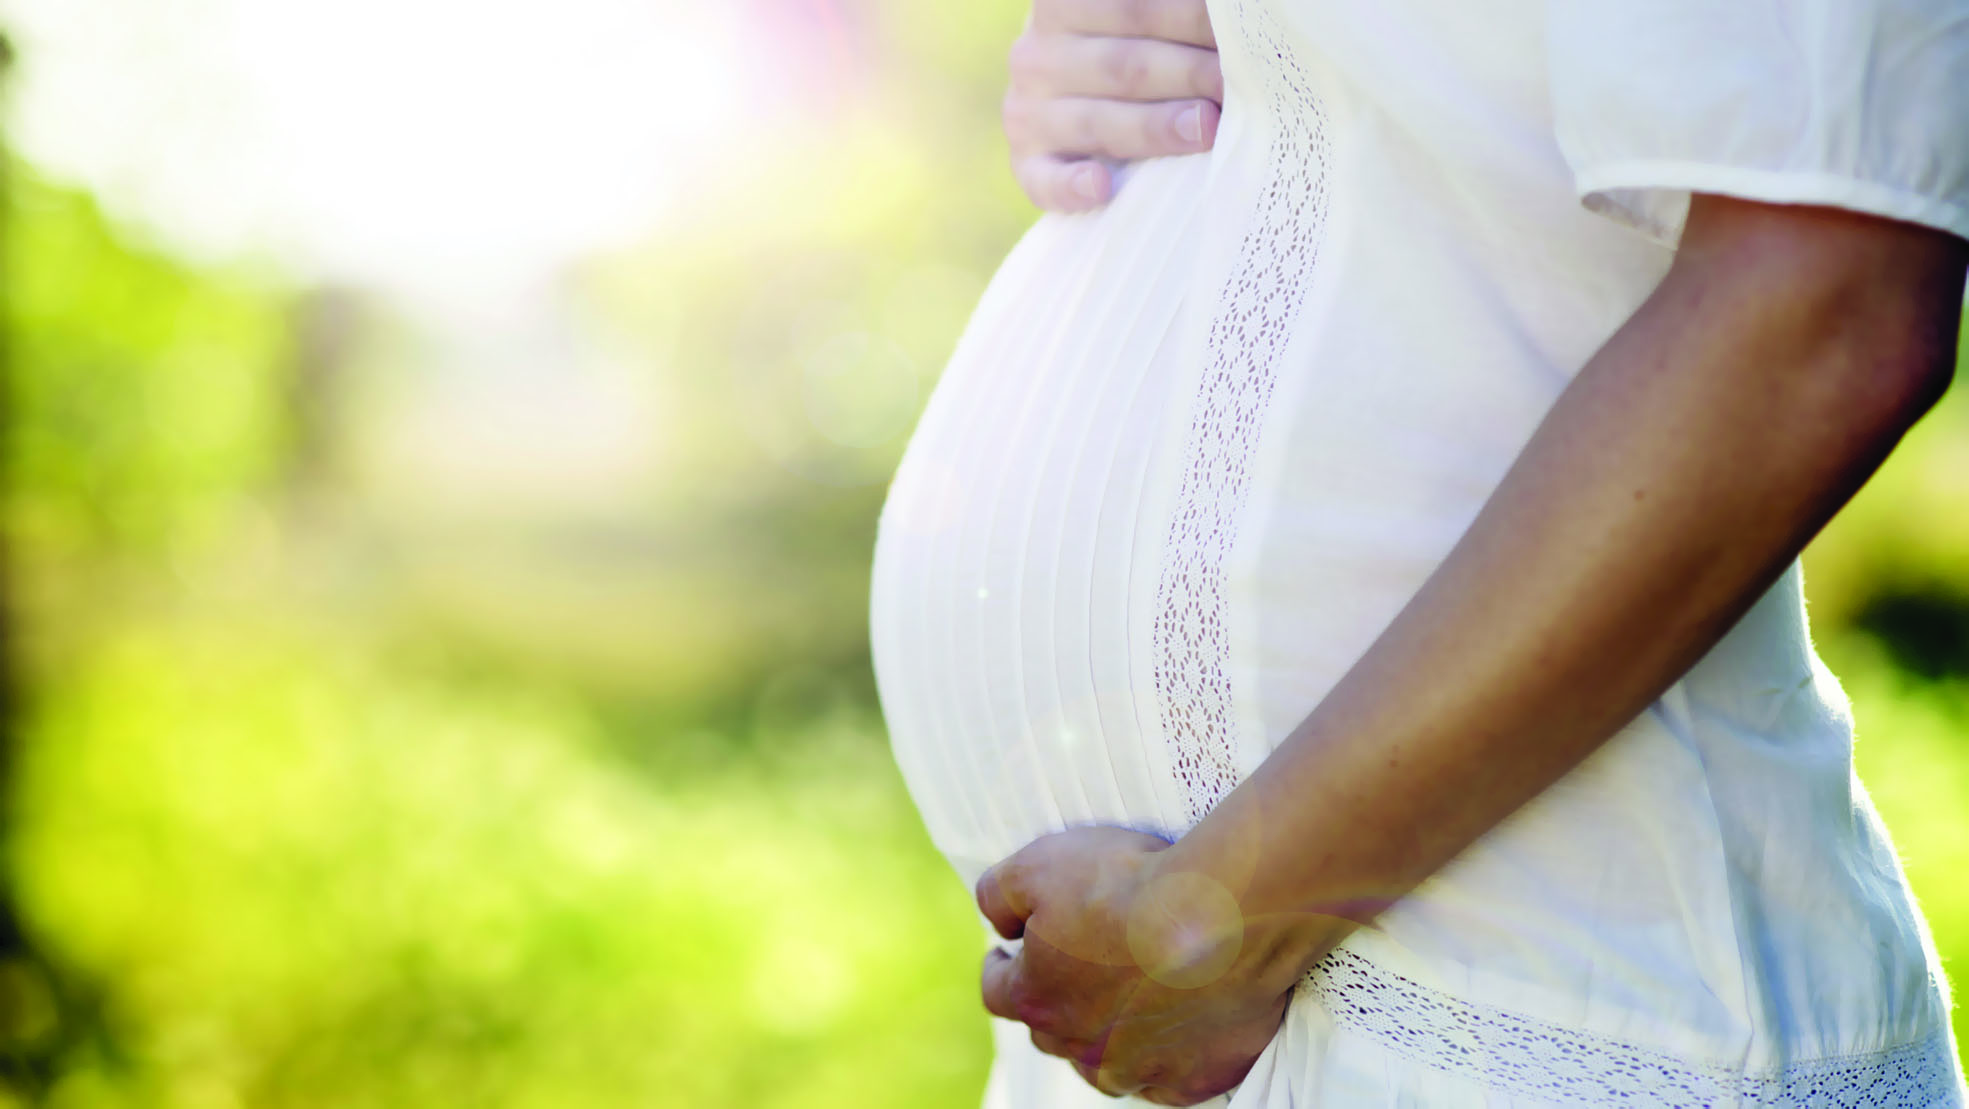 تشخيص إصابة الحوامل بحساسية

القمح قد يحد من مضاعفات الحمل